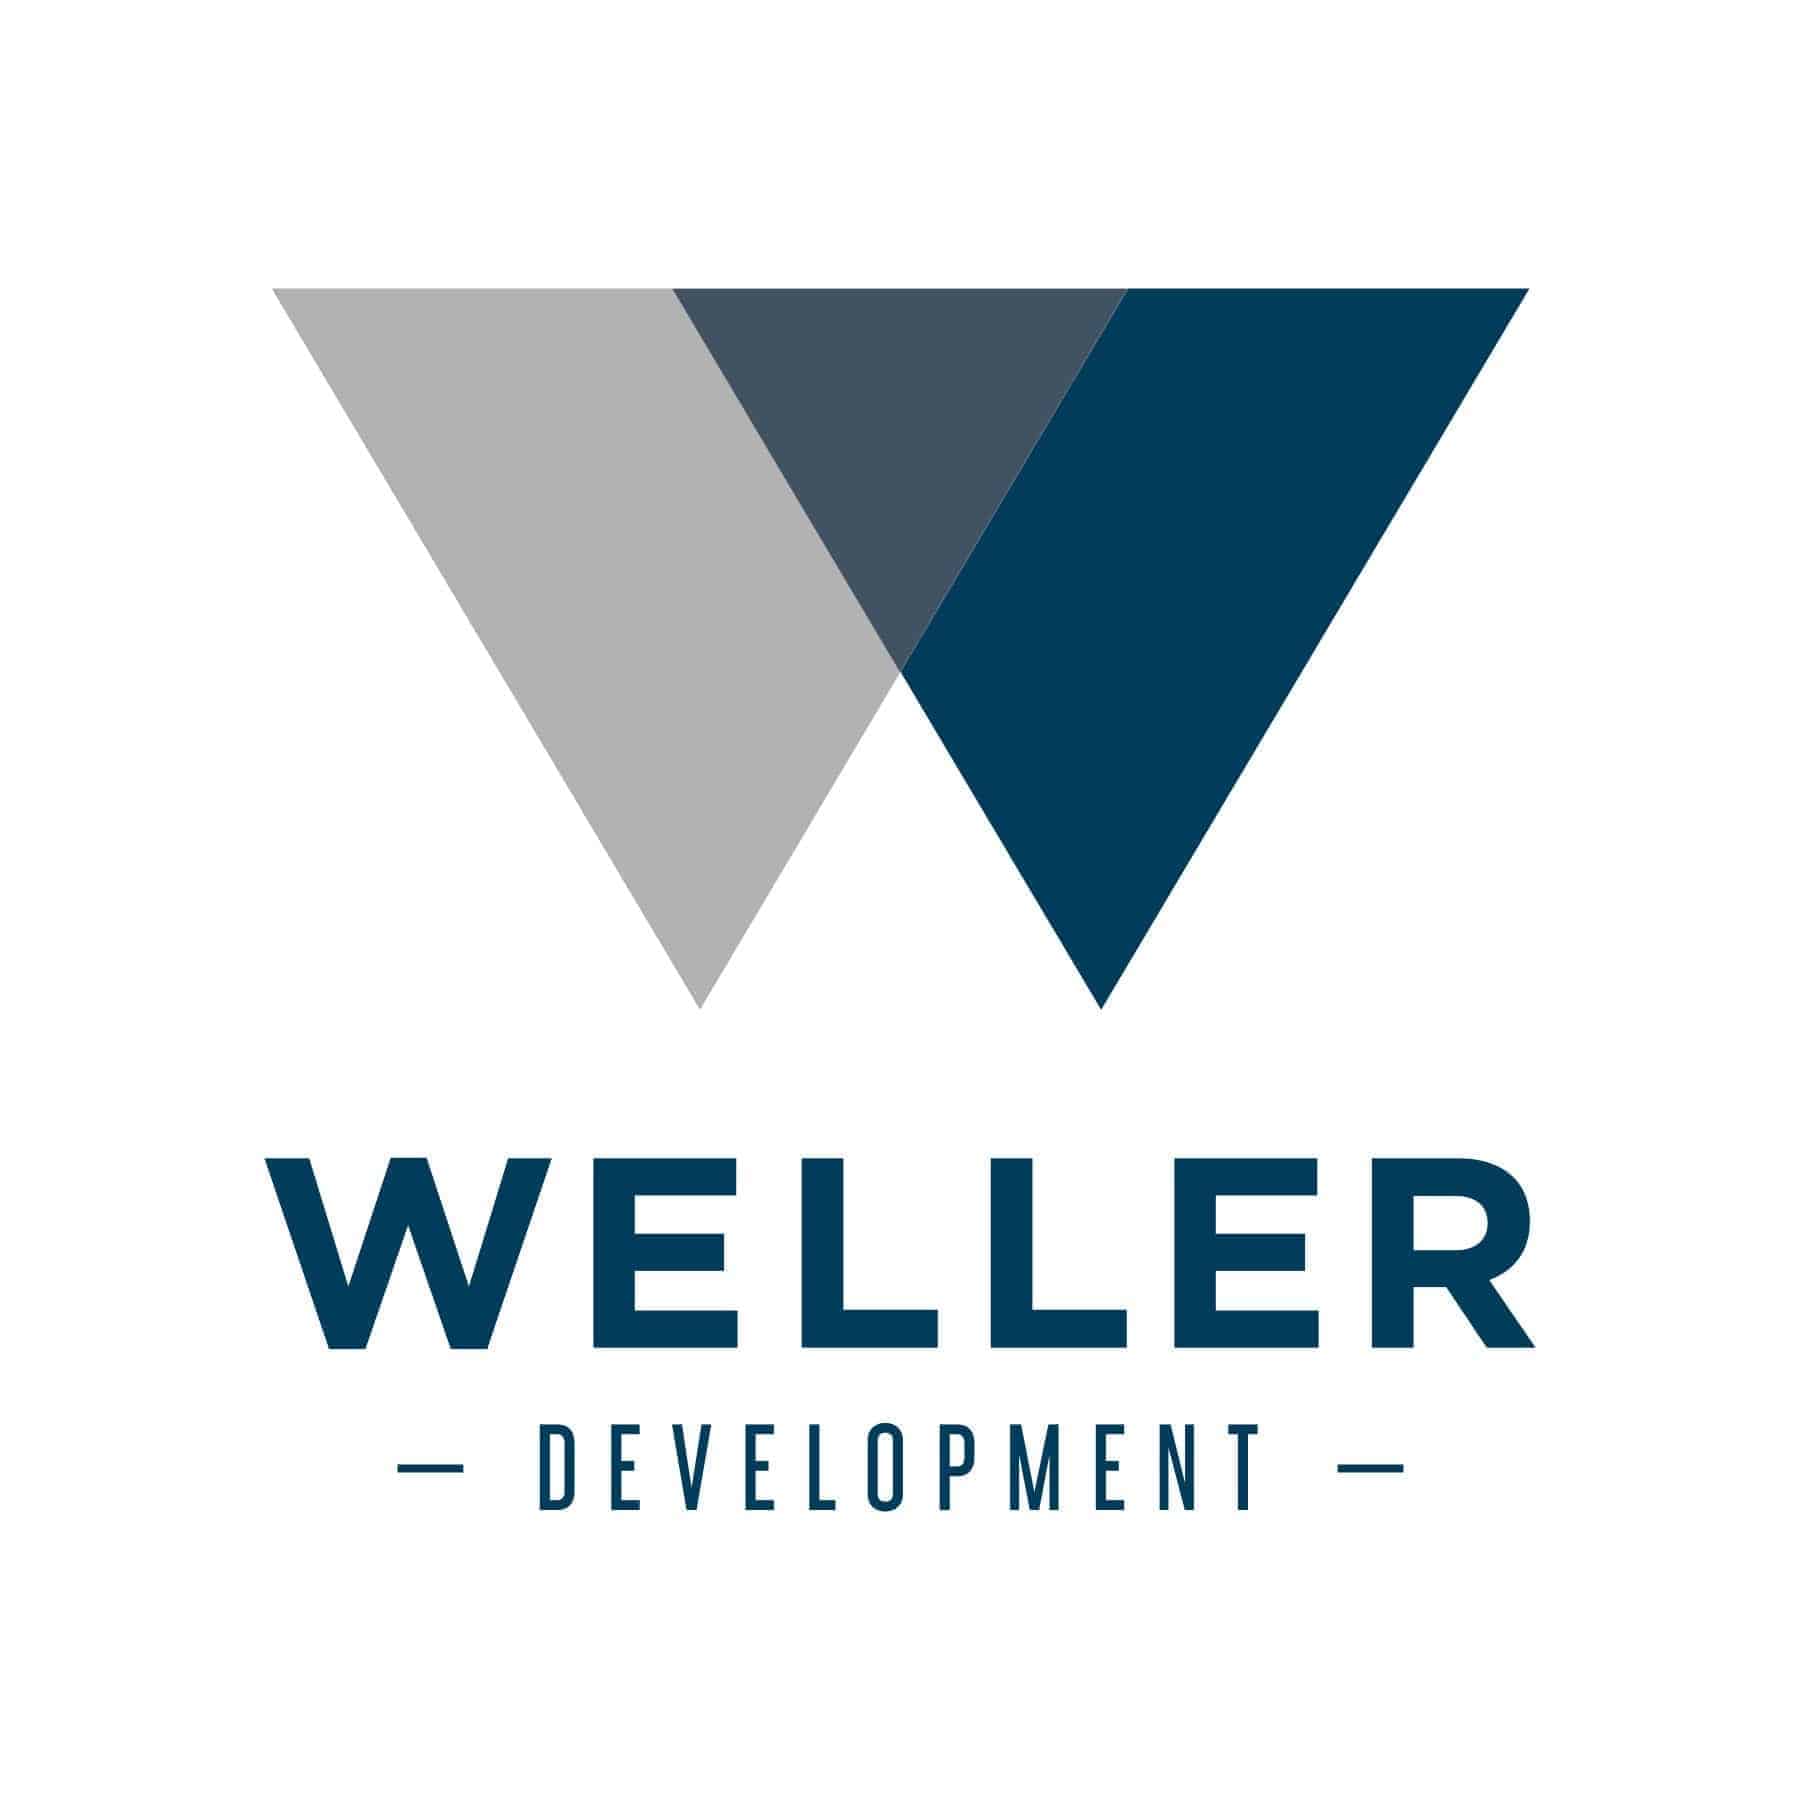 Weller Development